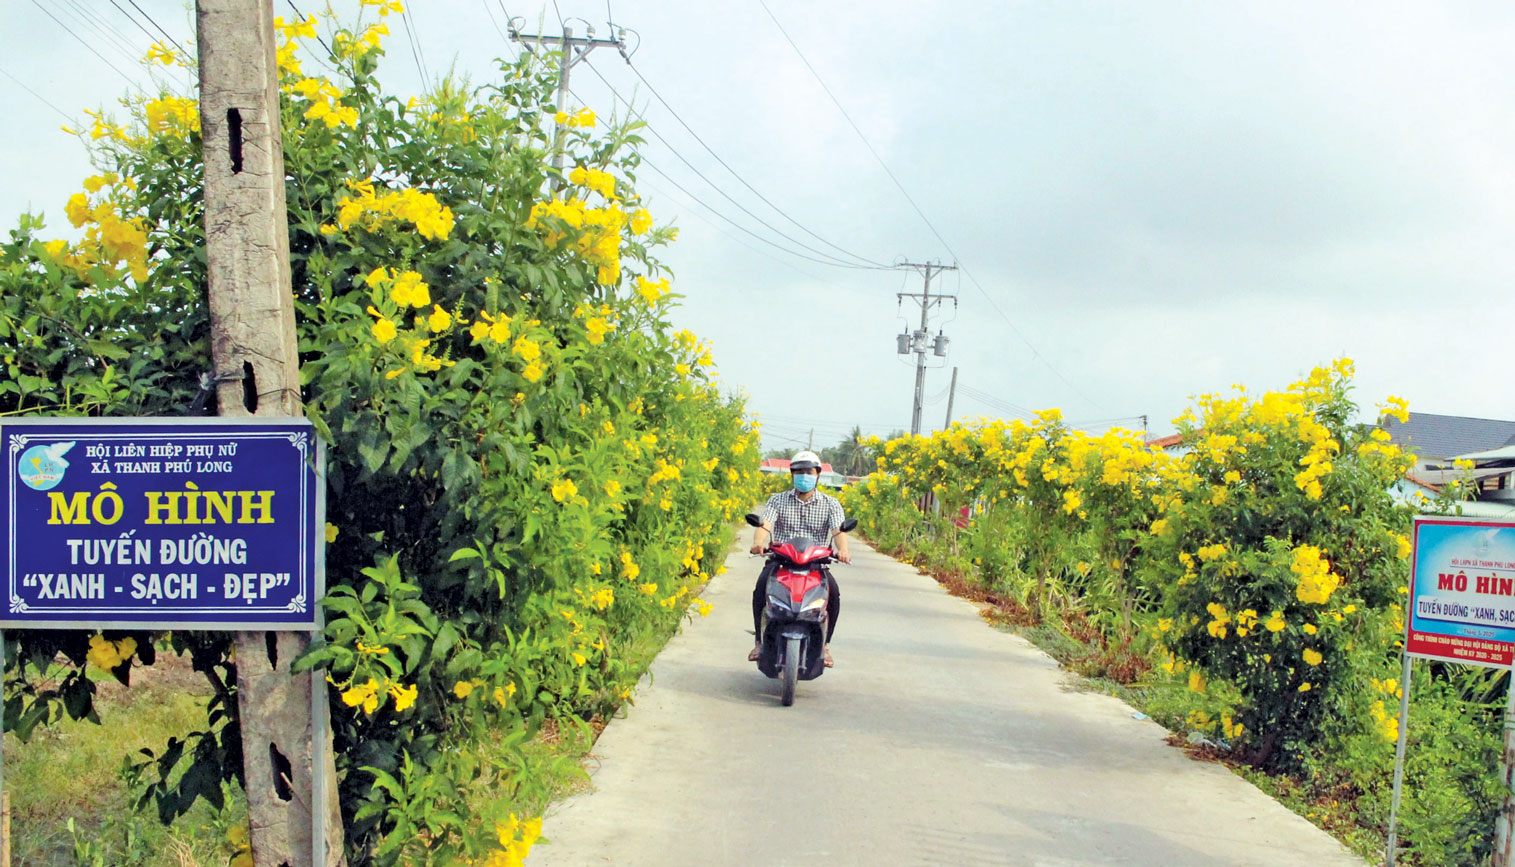 Ngành, tổ chức chính trị - xã hội xã Thanh Phú Long vận động người dân trồng hoa, cây xanh dọc các tuyến đường